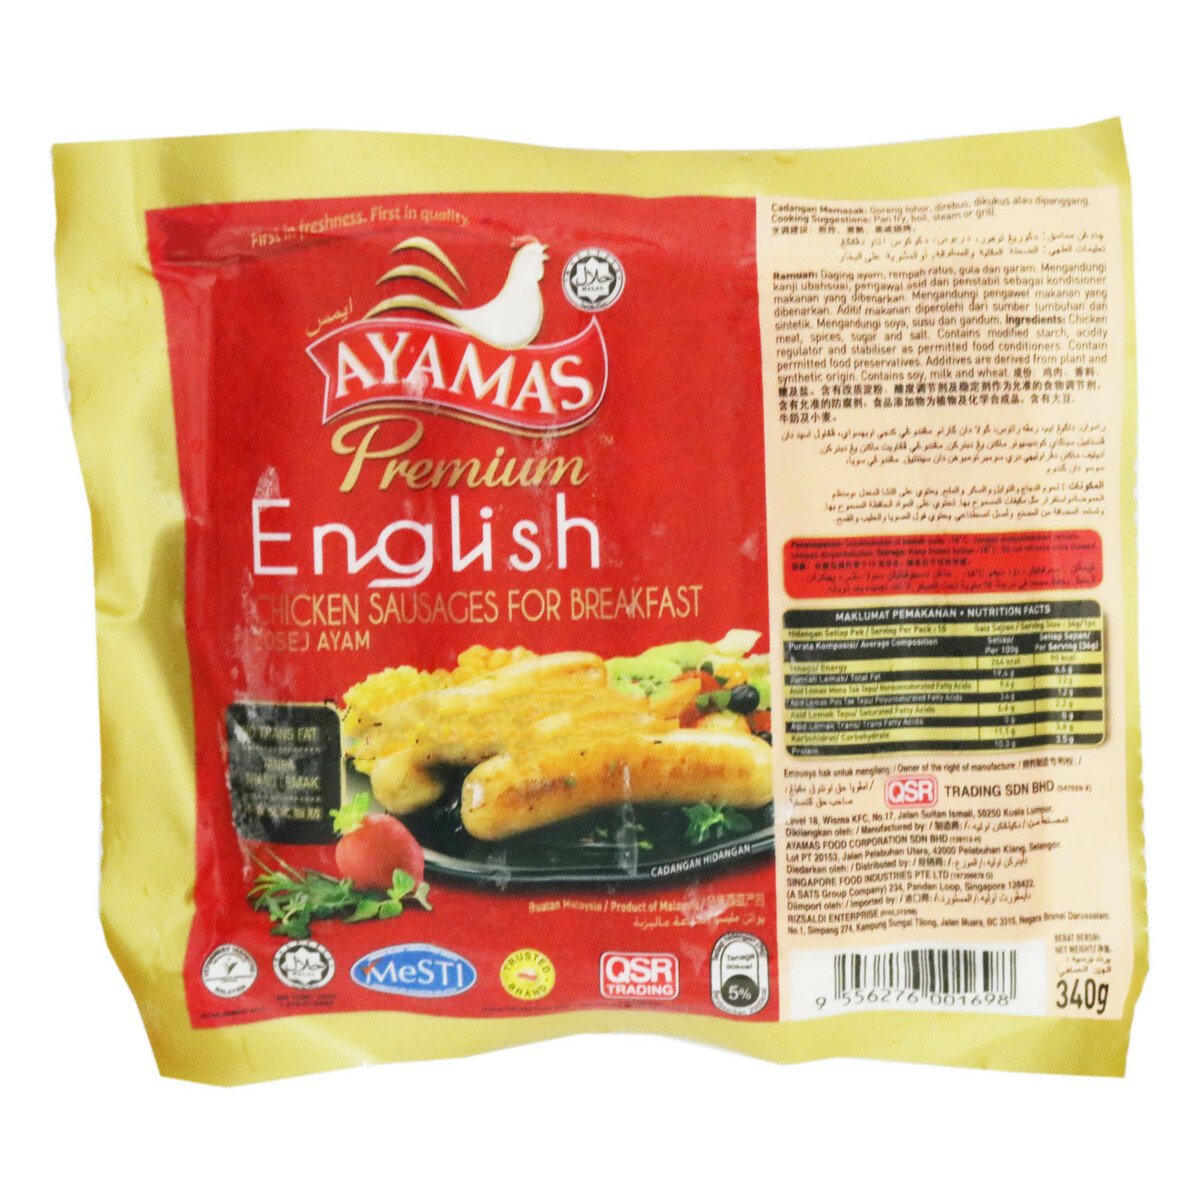 Ayamas English Sausage Break Fast 300g